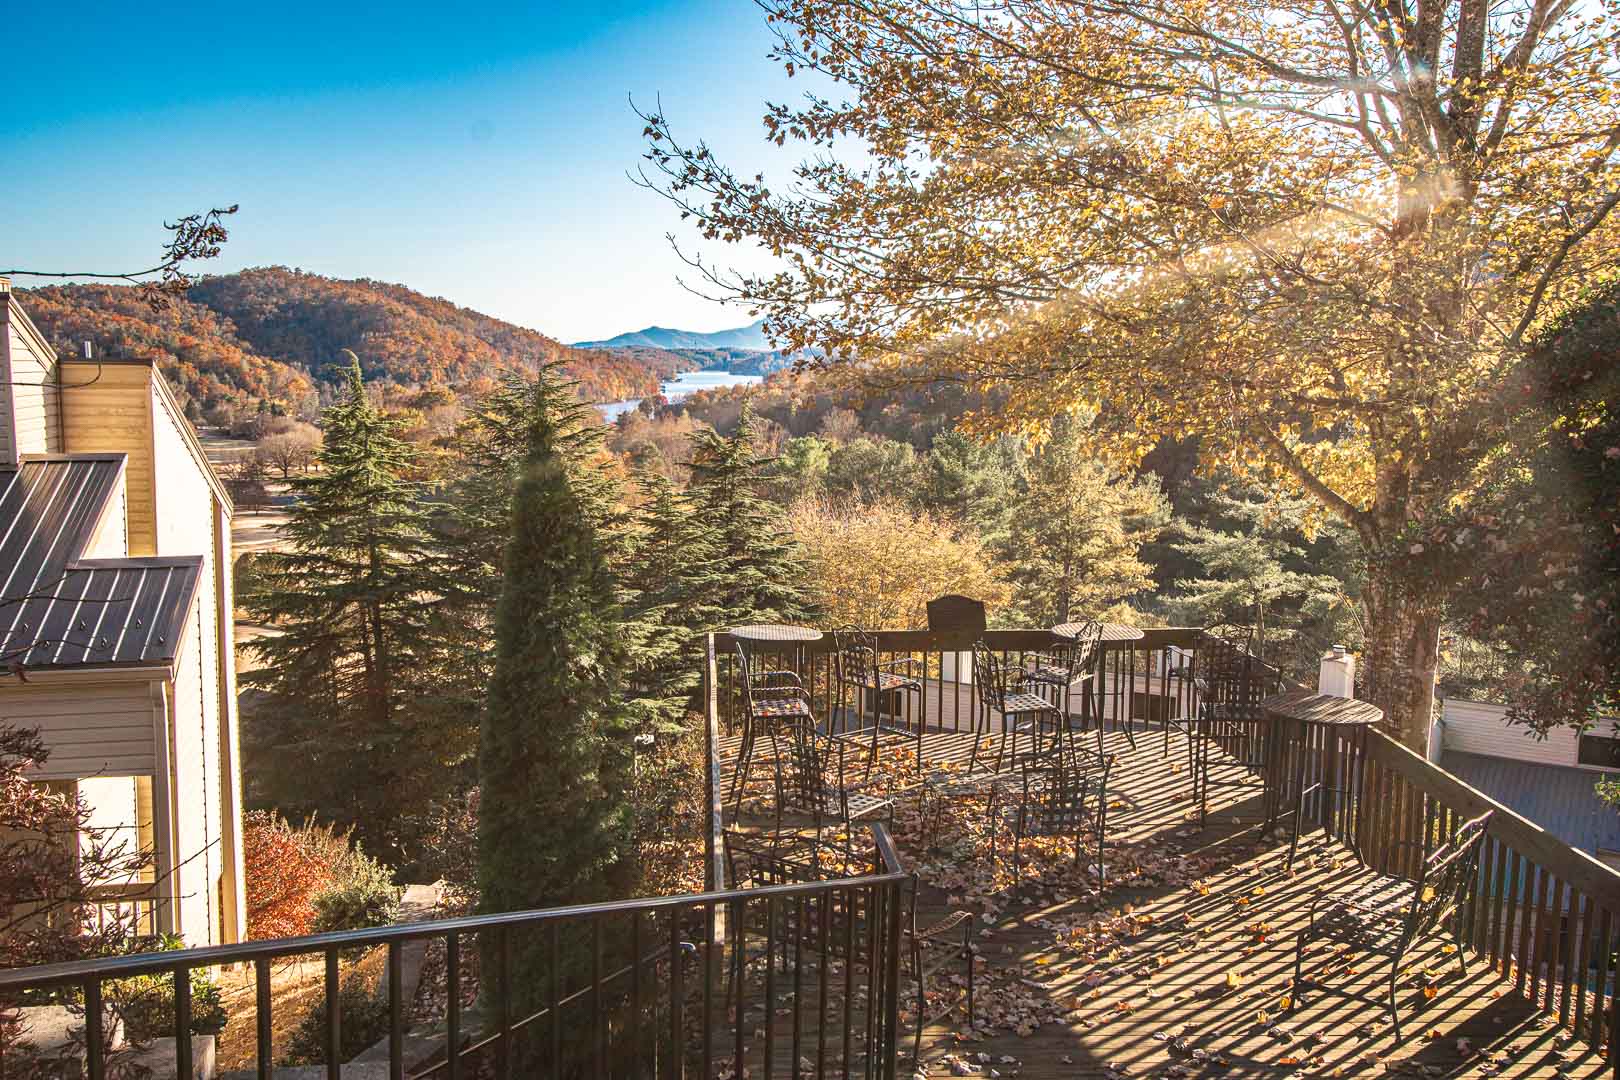 A scenic view at VRI's Mountain Loft Resort in North Carolina.